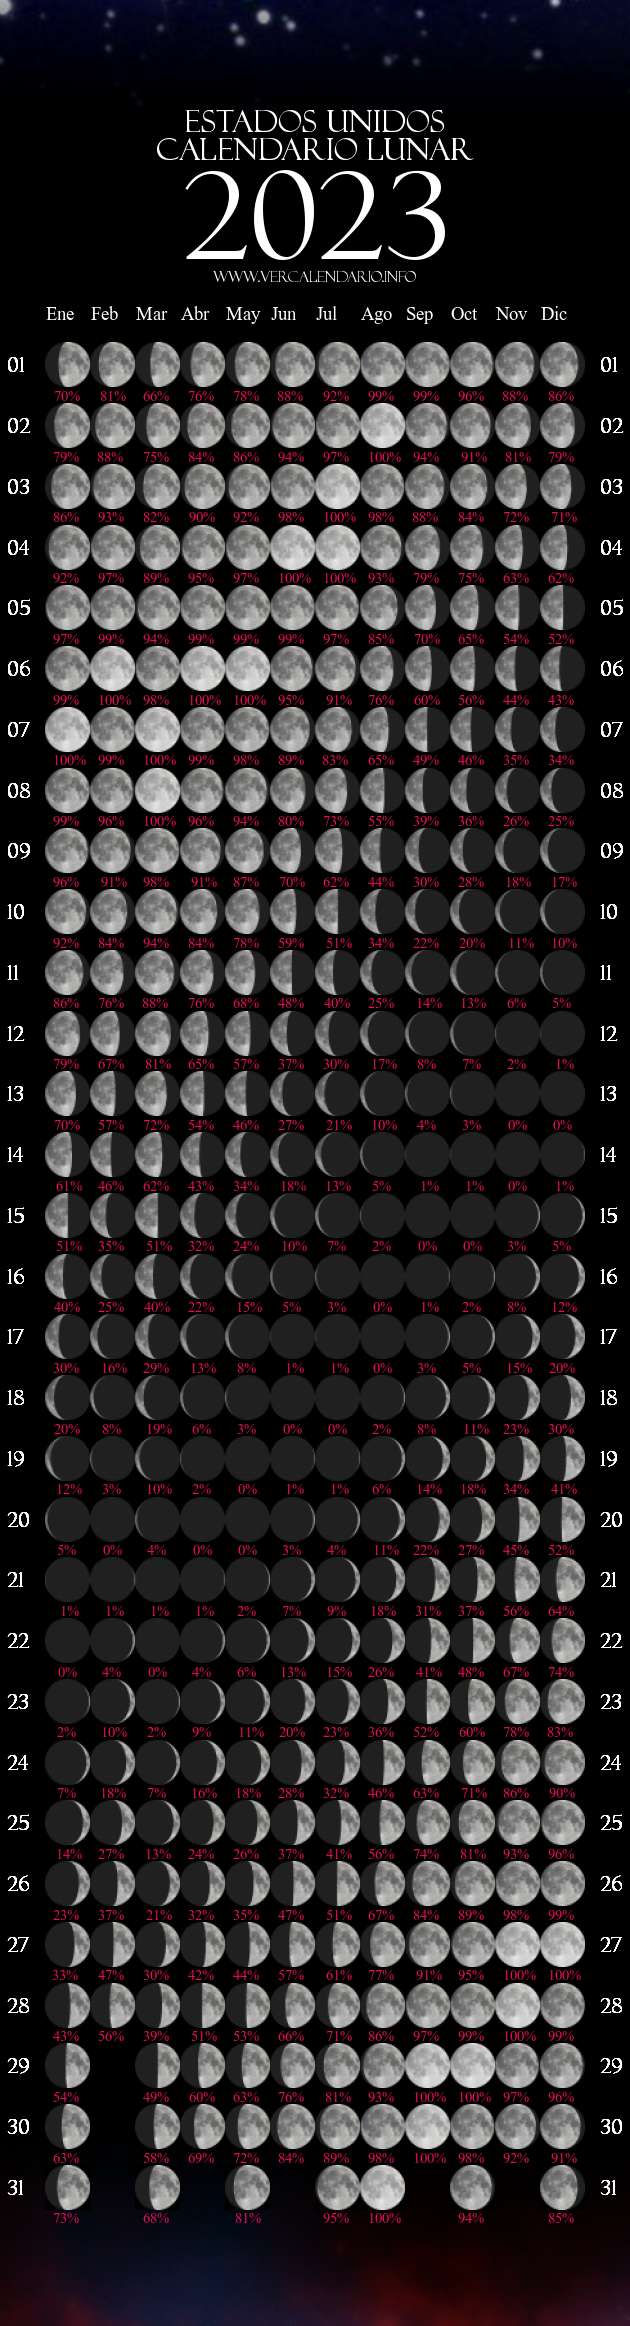 Calendario Lunar 2023 (Estados Unidos)